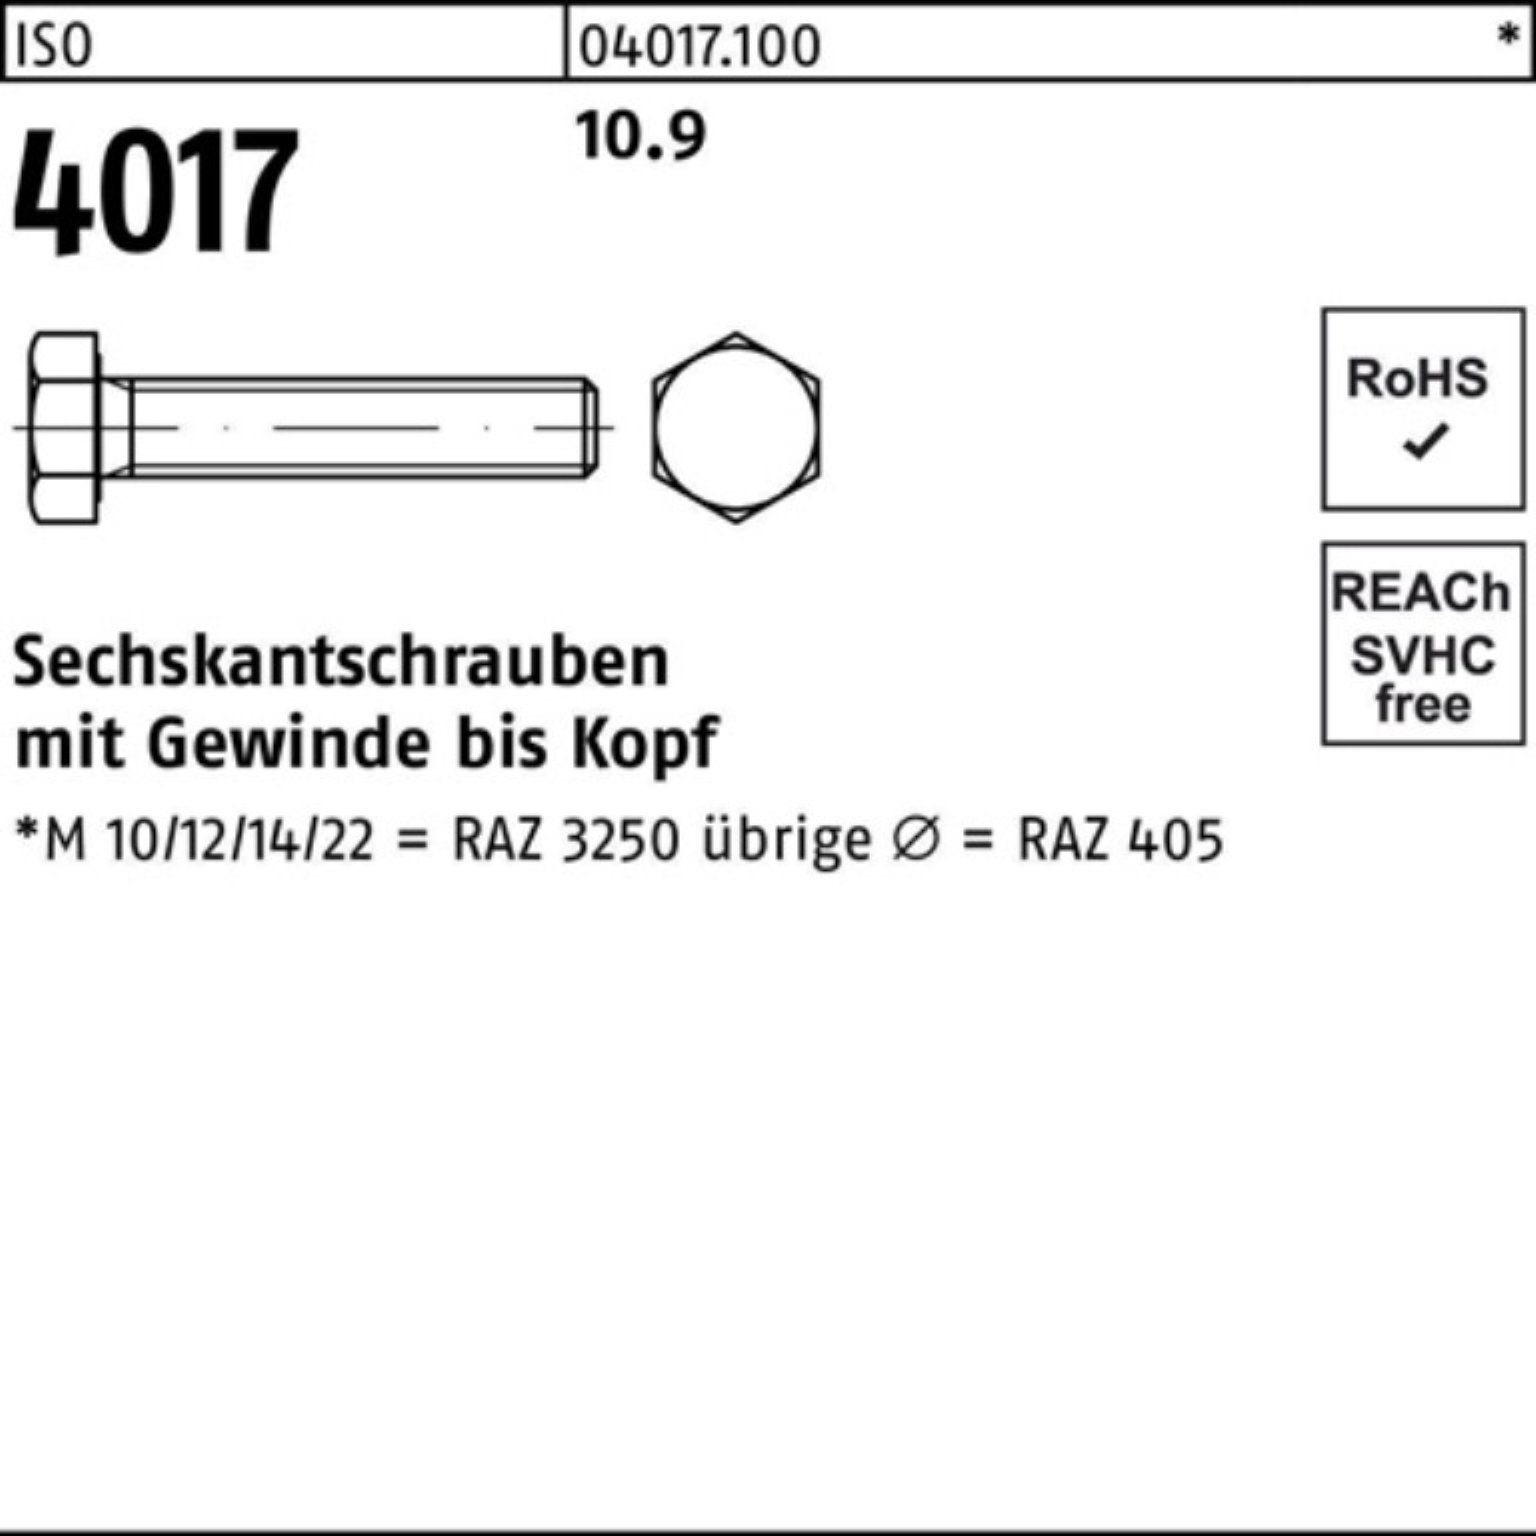 ISO VG 4017 Sechskantschraube 100er Sechskantschraube 200 Stück 4 Pack ISO 10 10.9 Bufab M22x